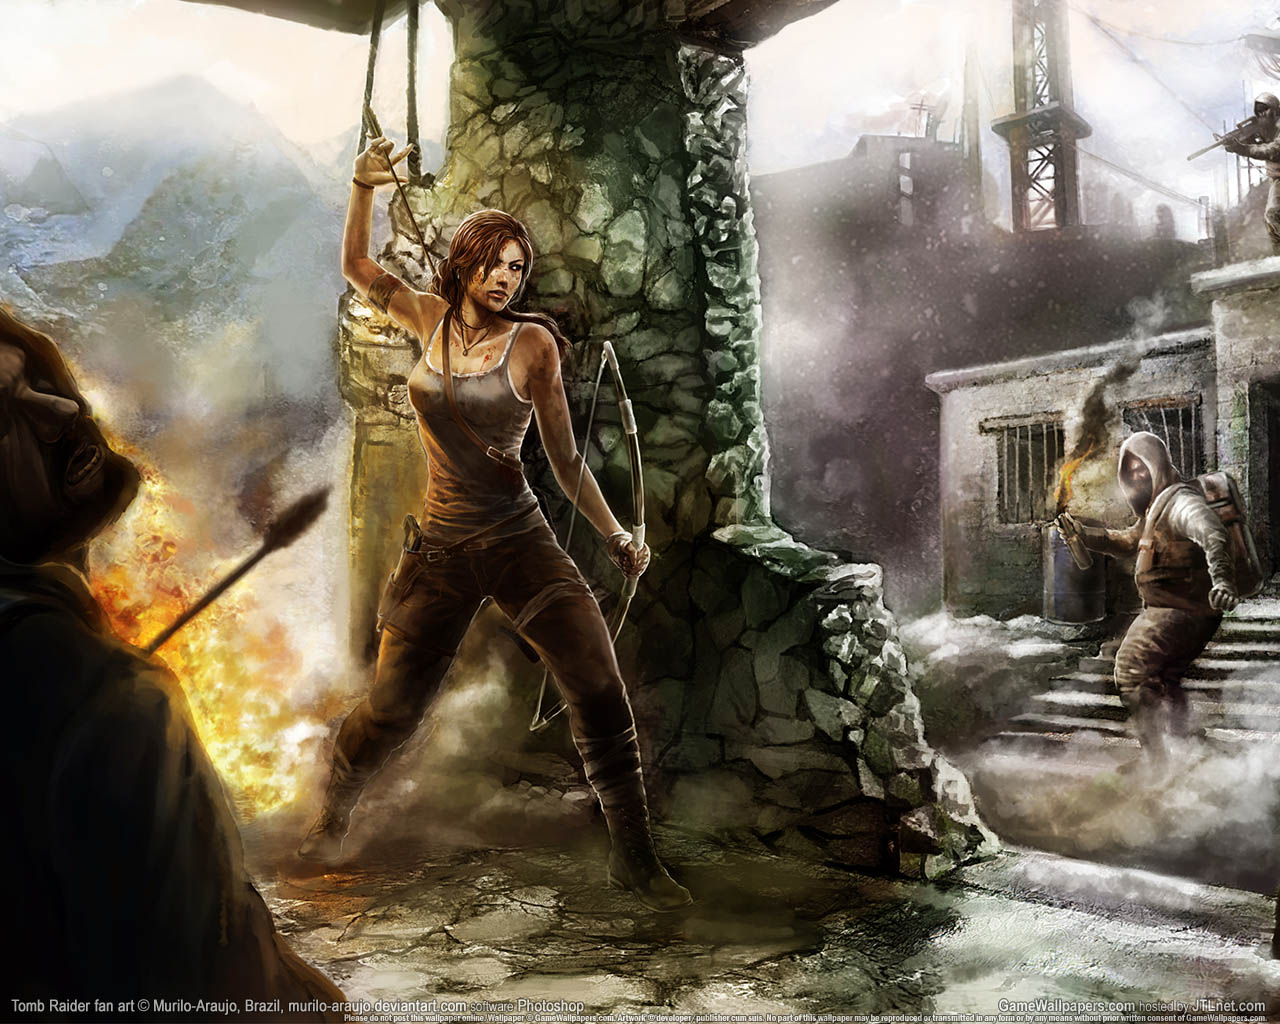 Tomb Raider fan art fond d'cran 02 1280x1024